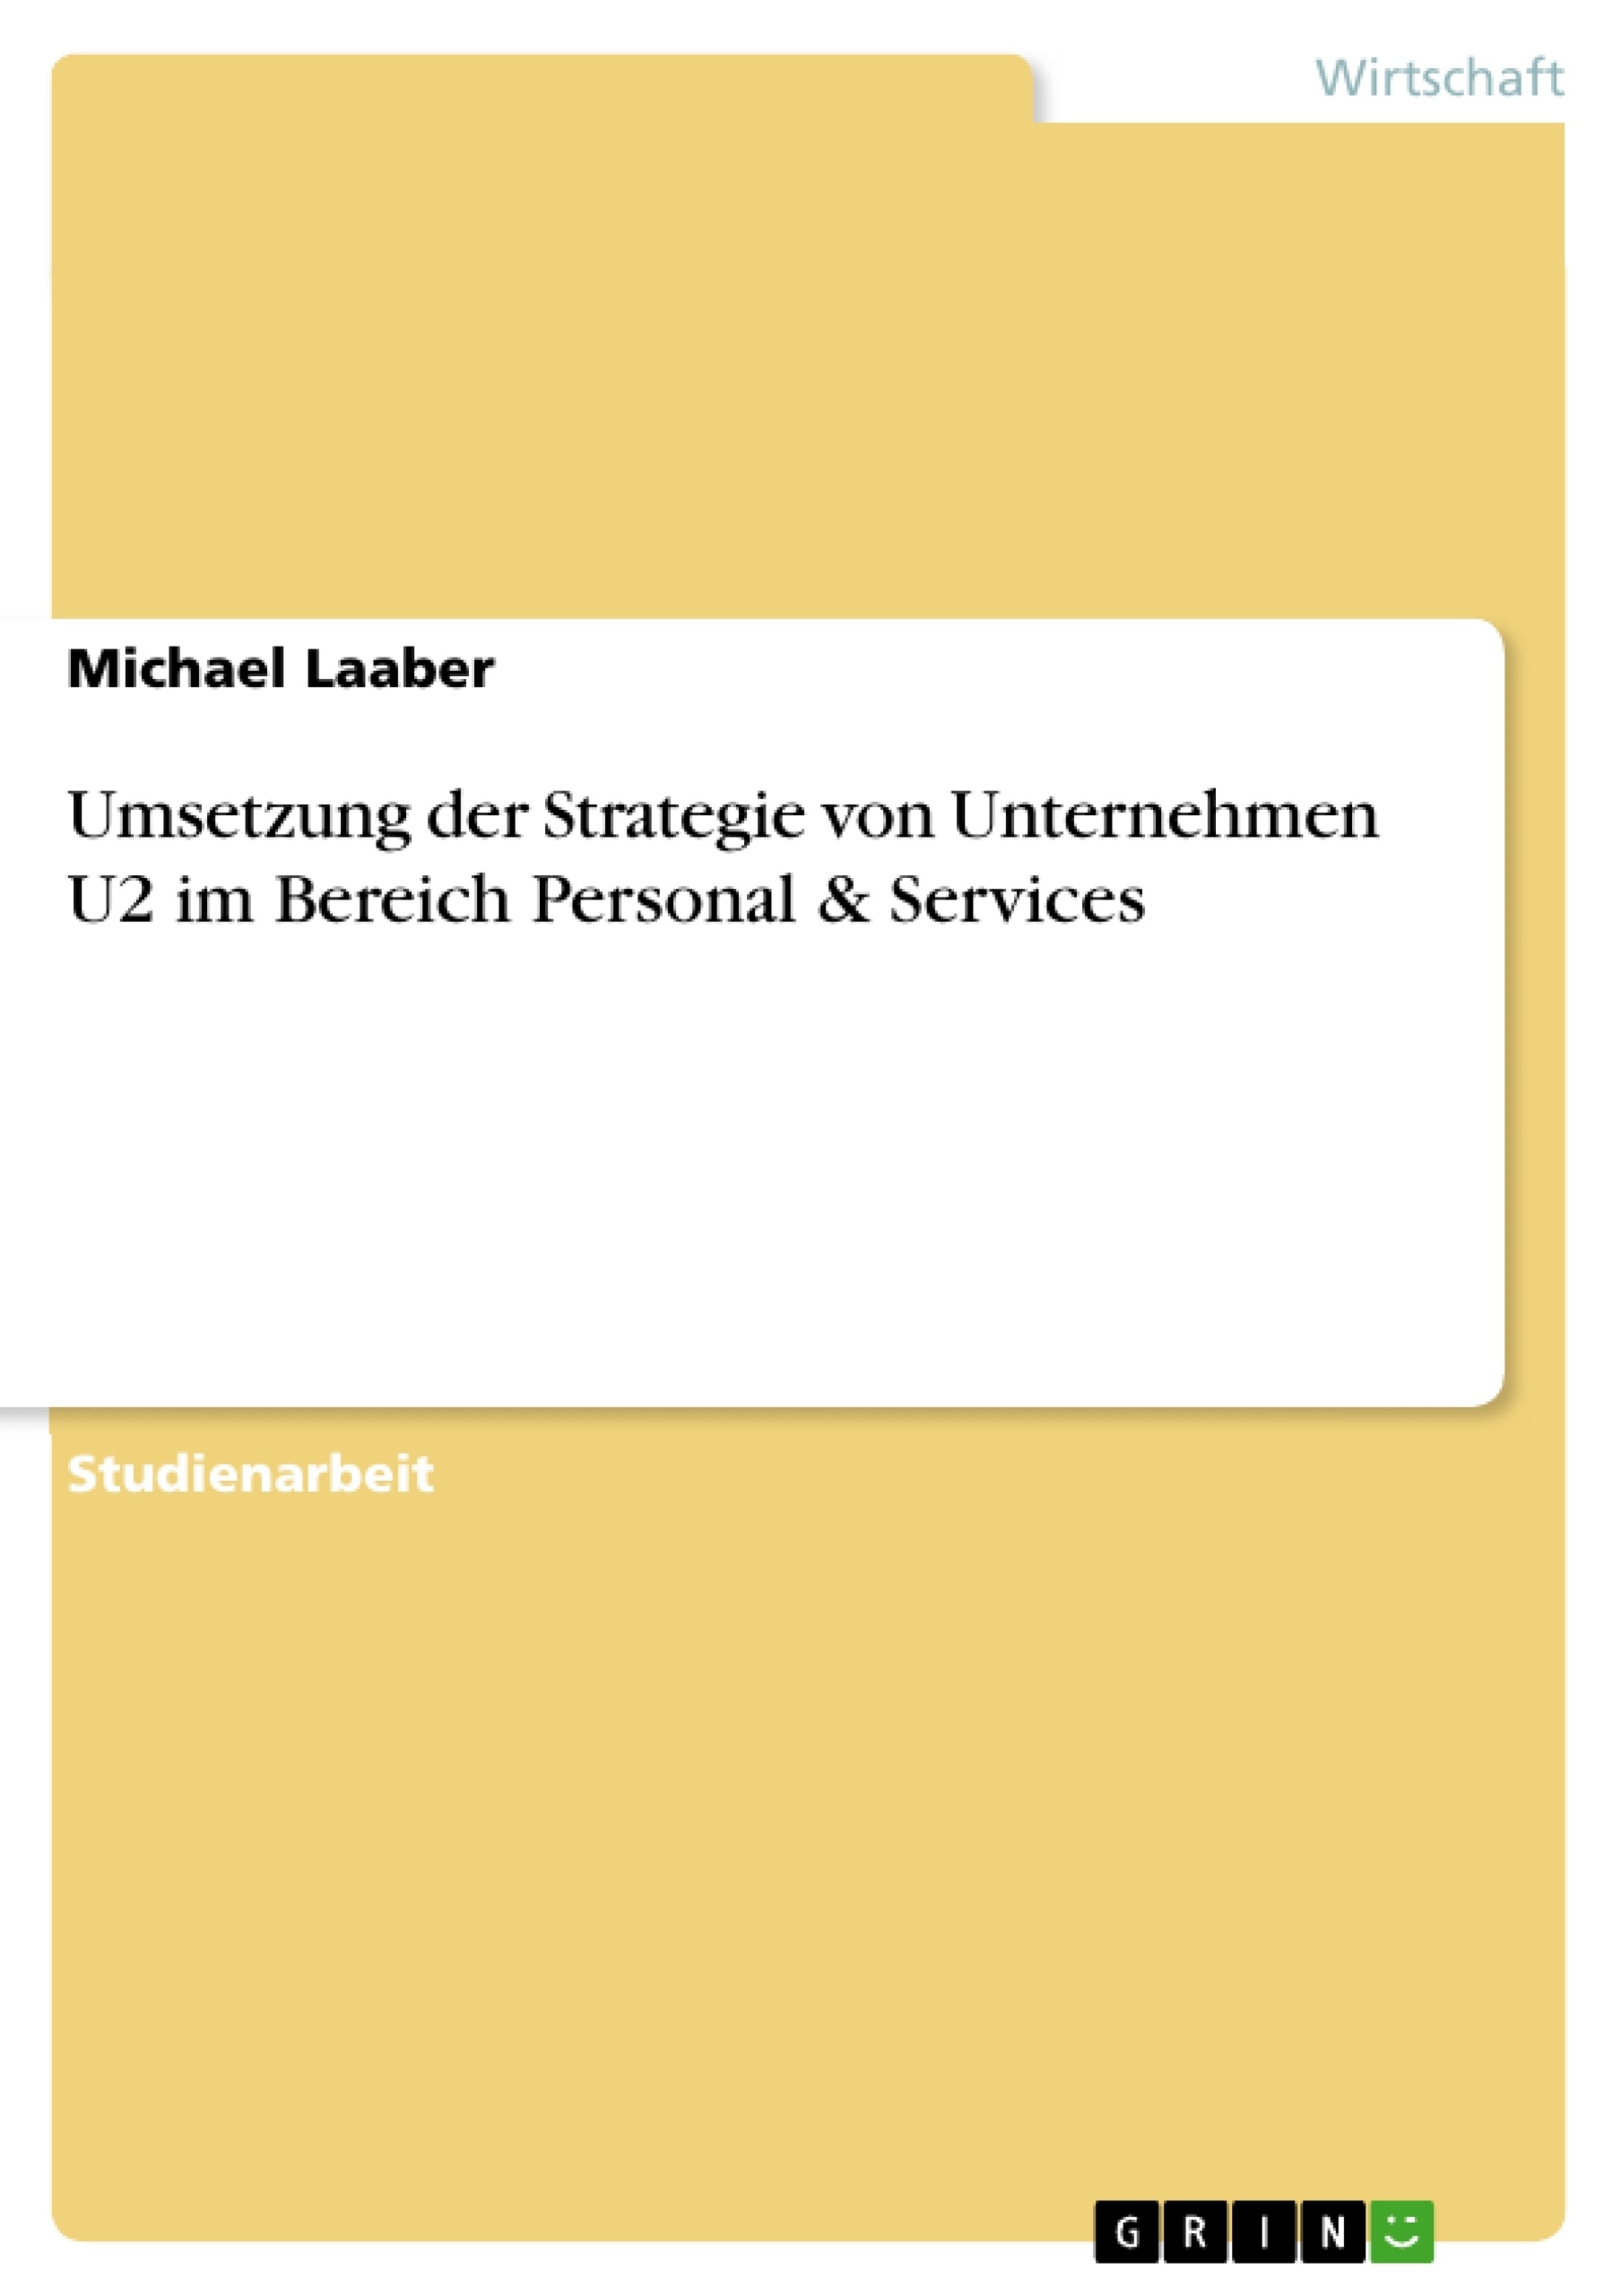 Title: Umsetzung der Strategie von Unternehmen U2 im Bereich Personal & Services